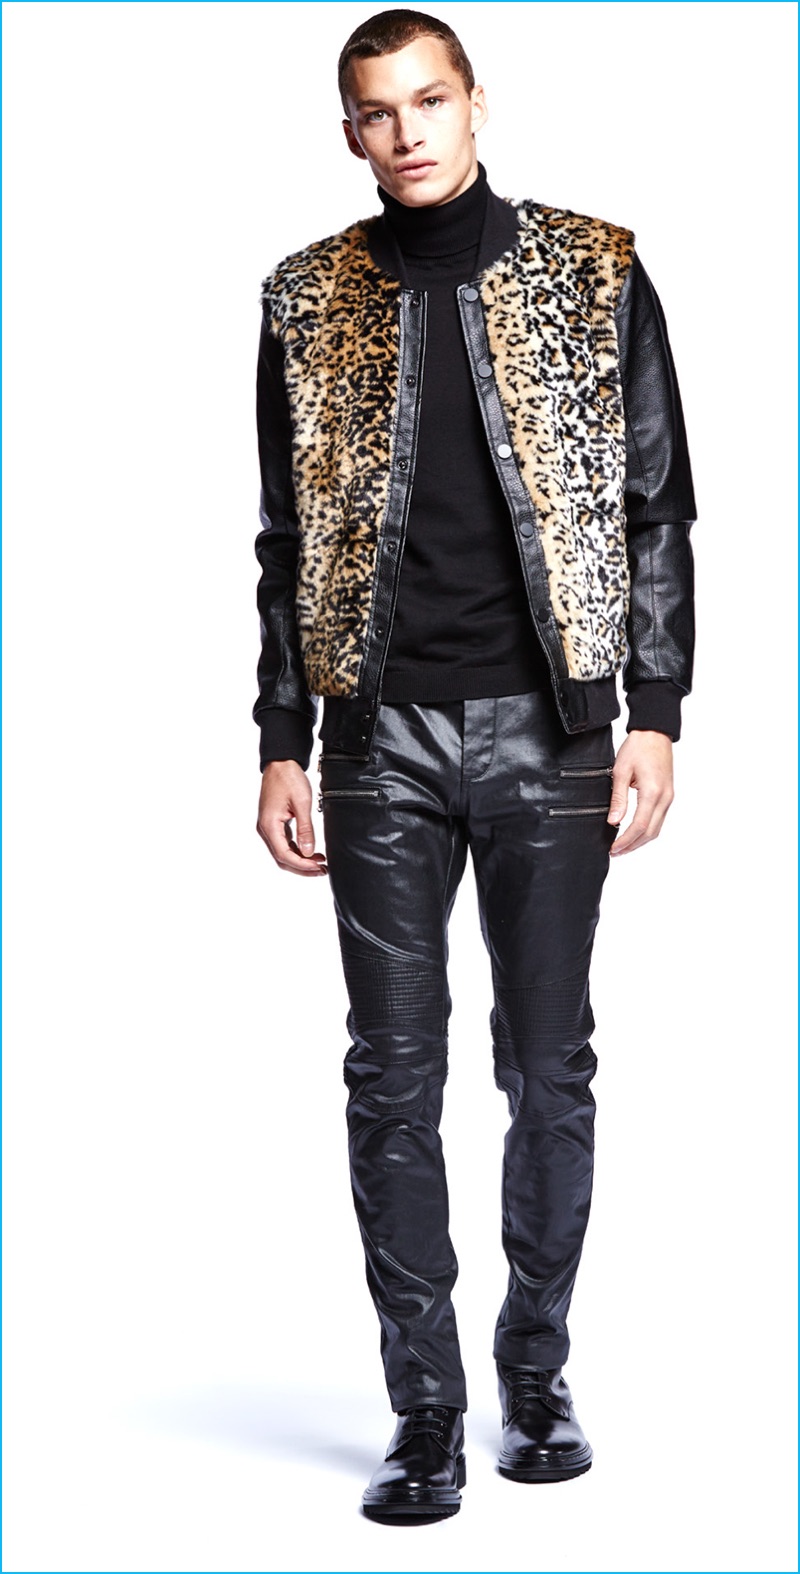 Louis Mayhew wears Laboratory leopard faux fur jacket and black coated moto jeans.